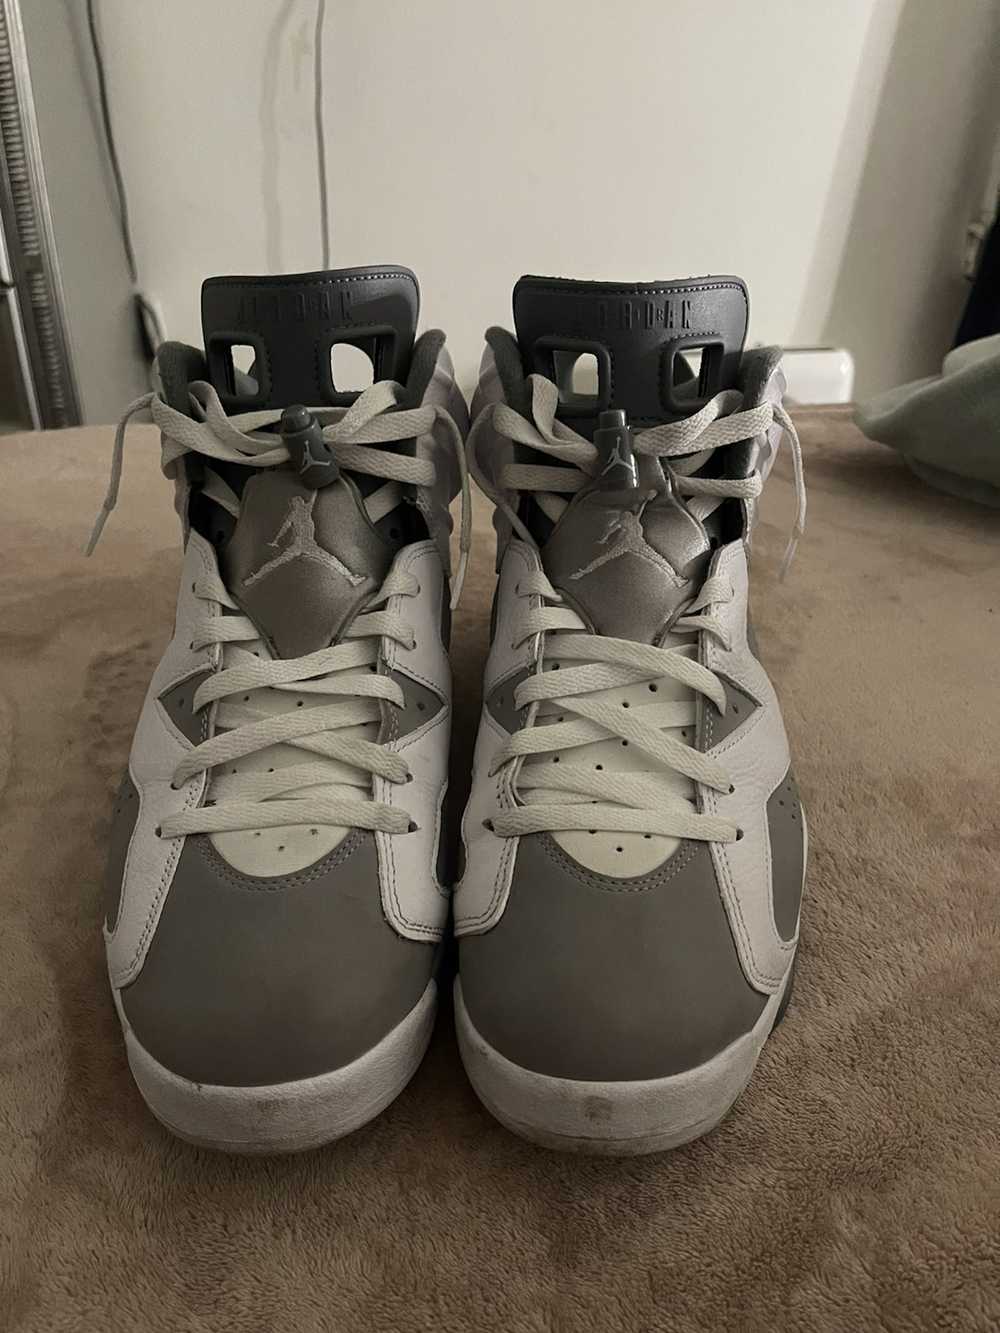 Jordan Brand Jordan 6s “Cool Grey” - image 3